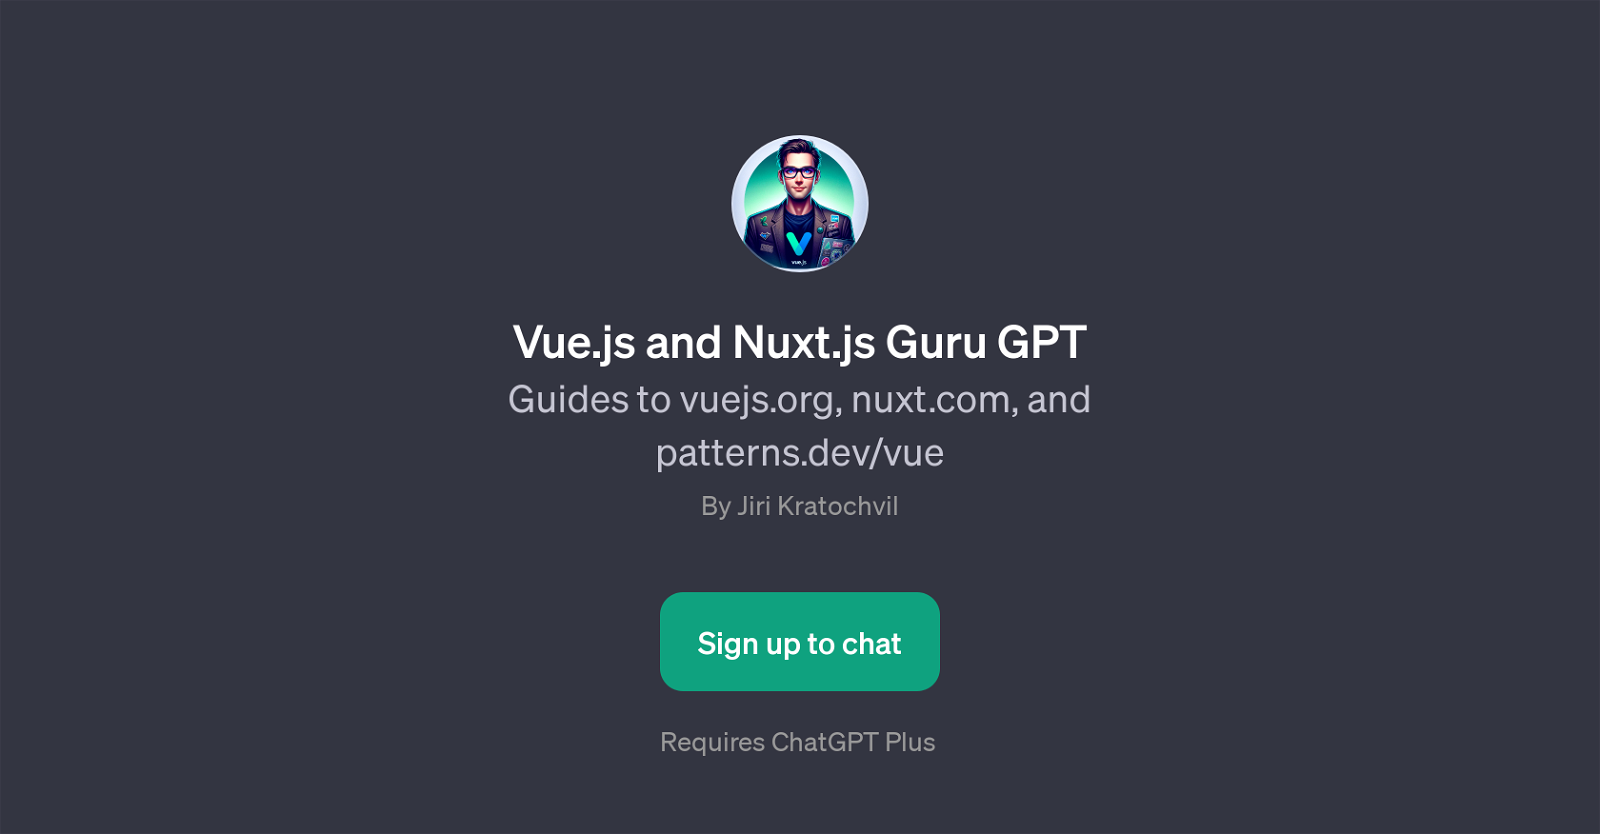 Vue.js and Nuxt.js Guru GPT website